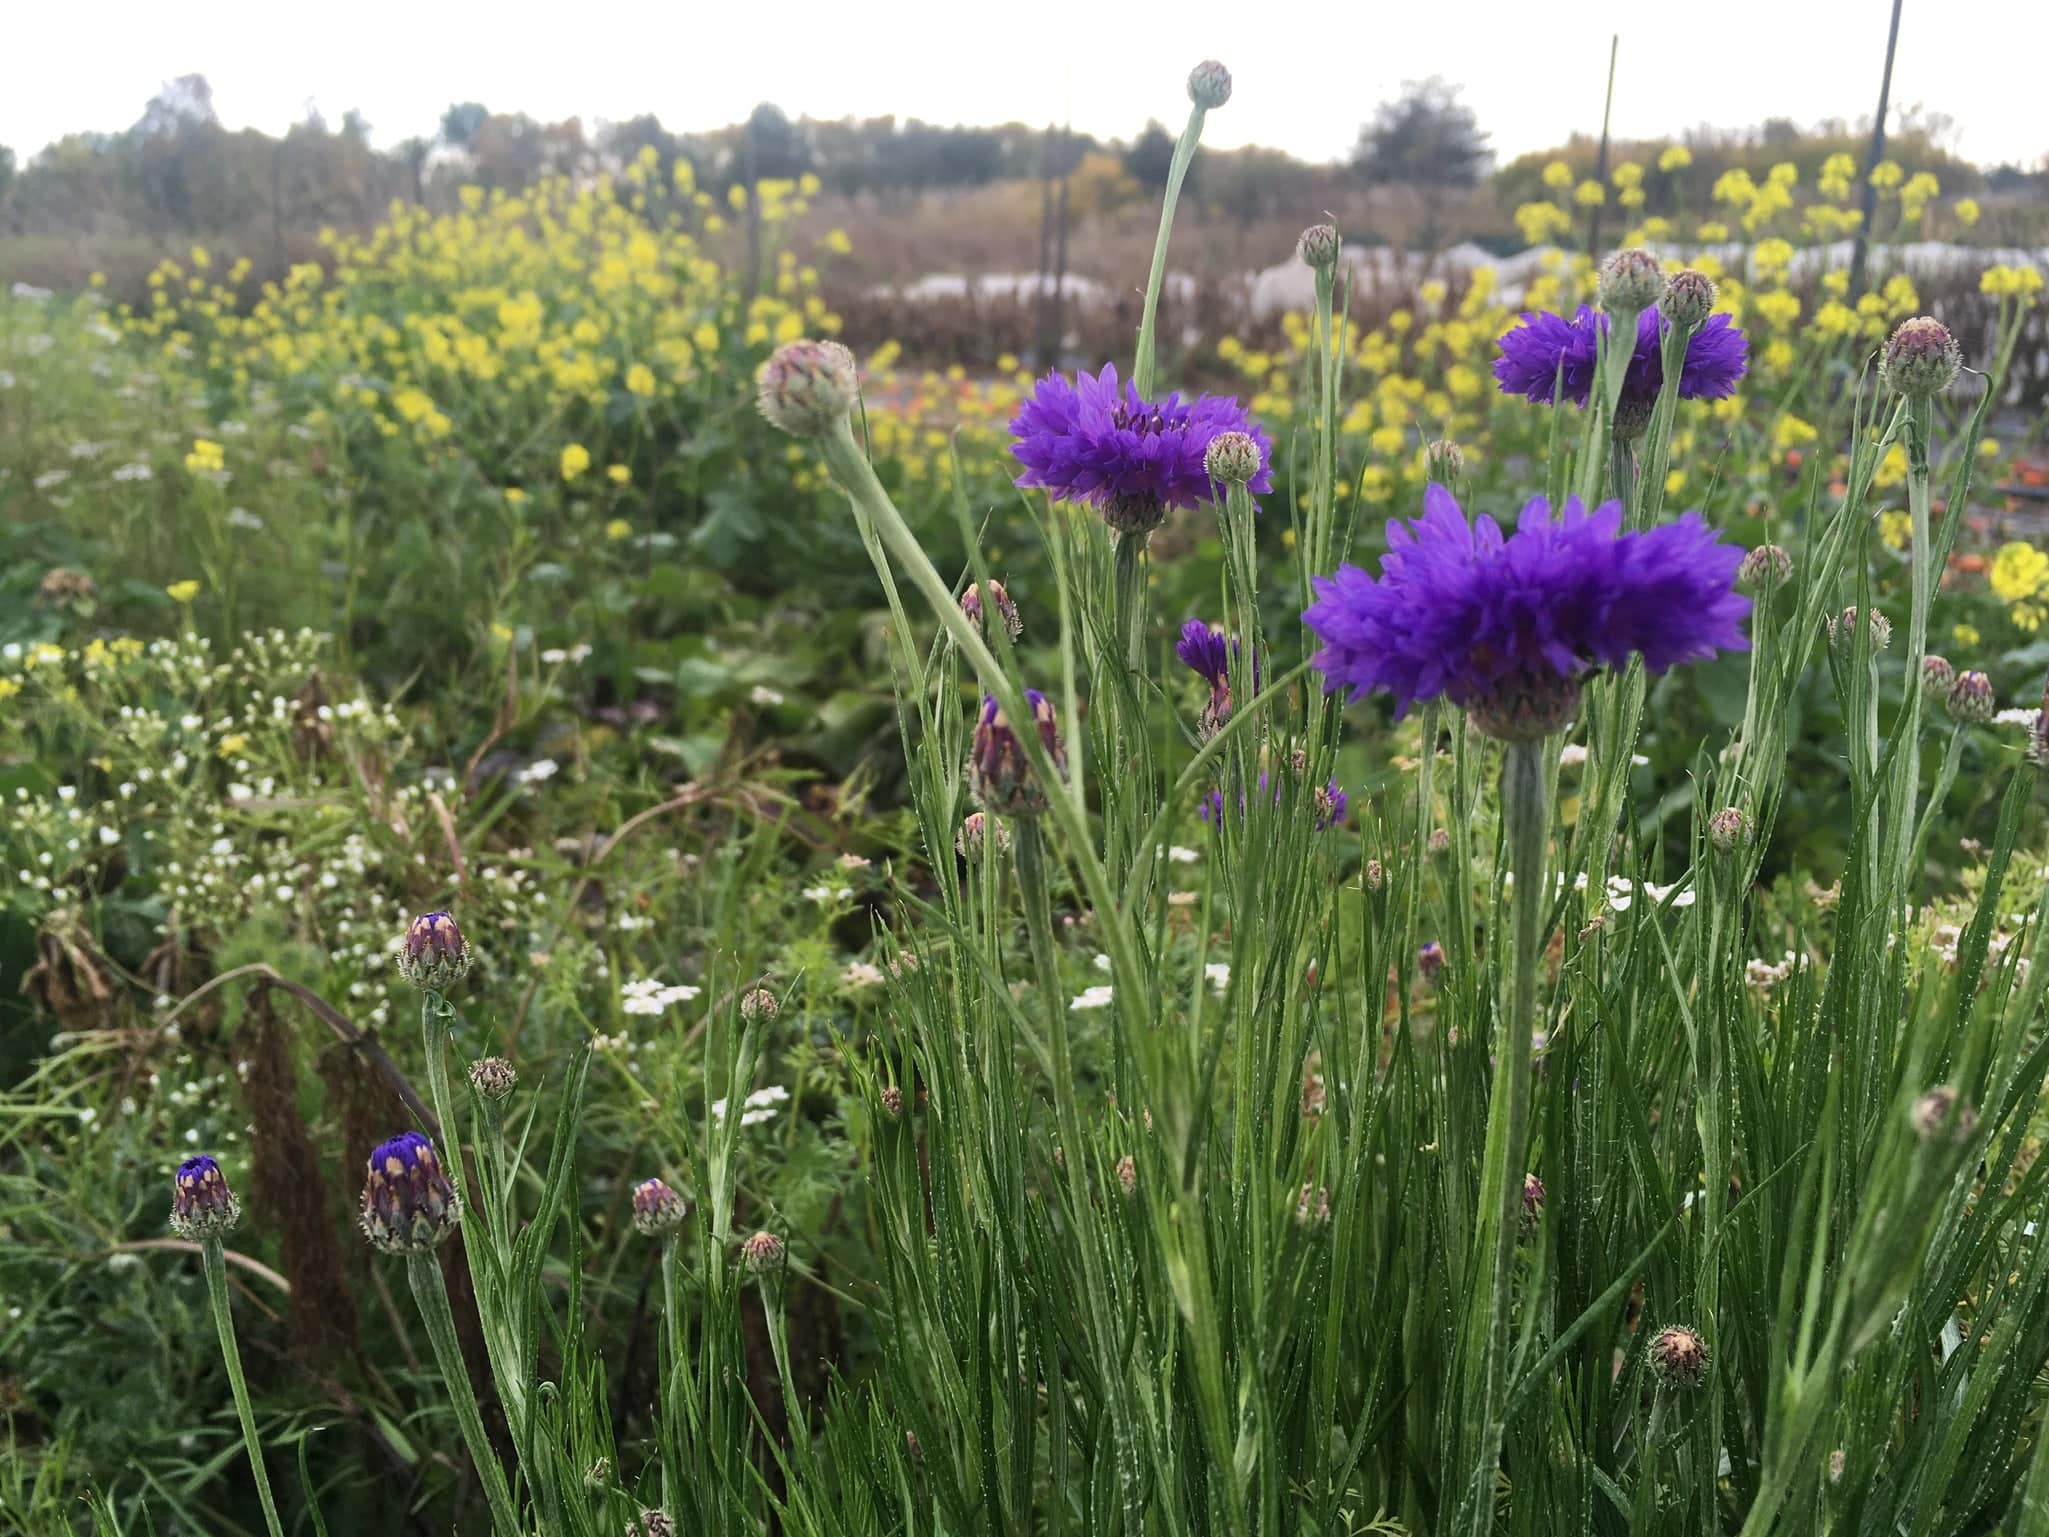 purple flowers in the field